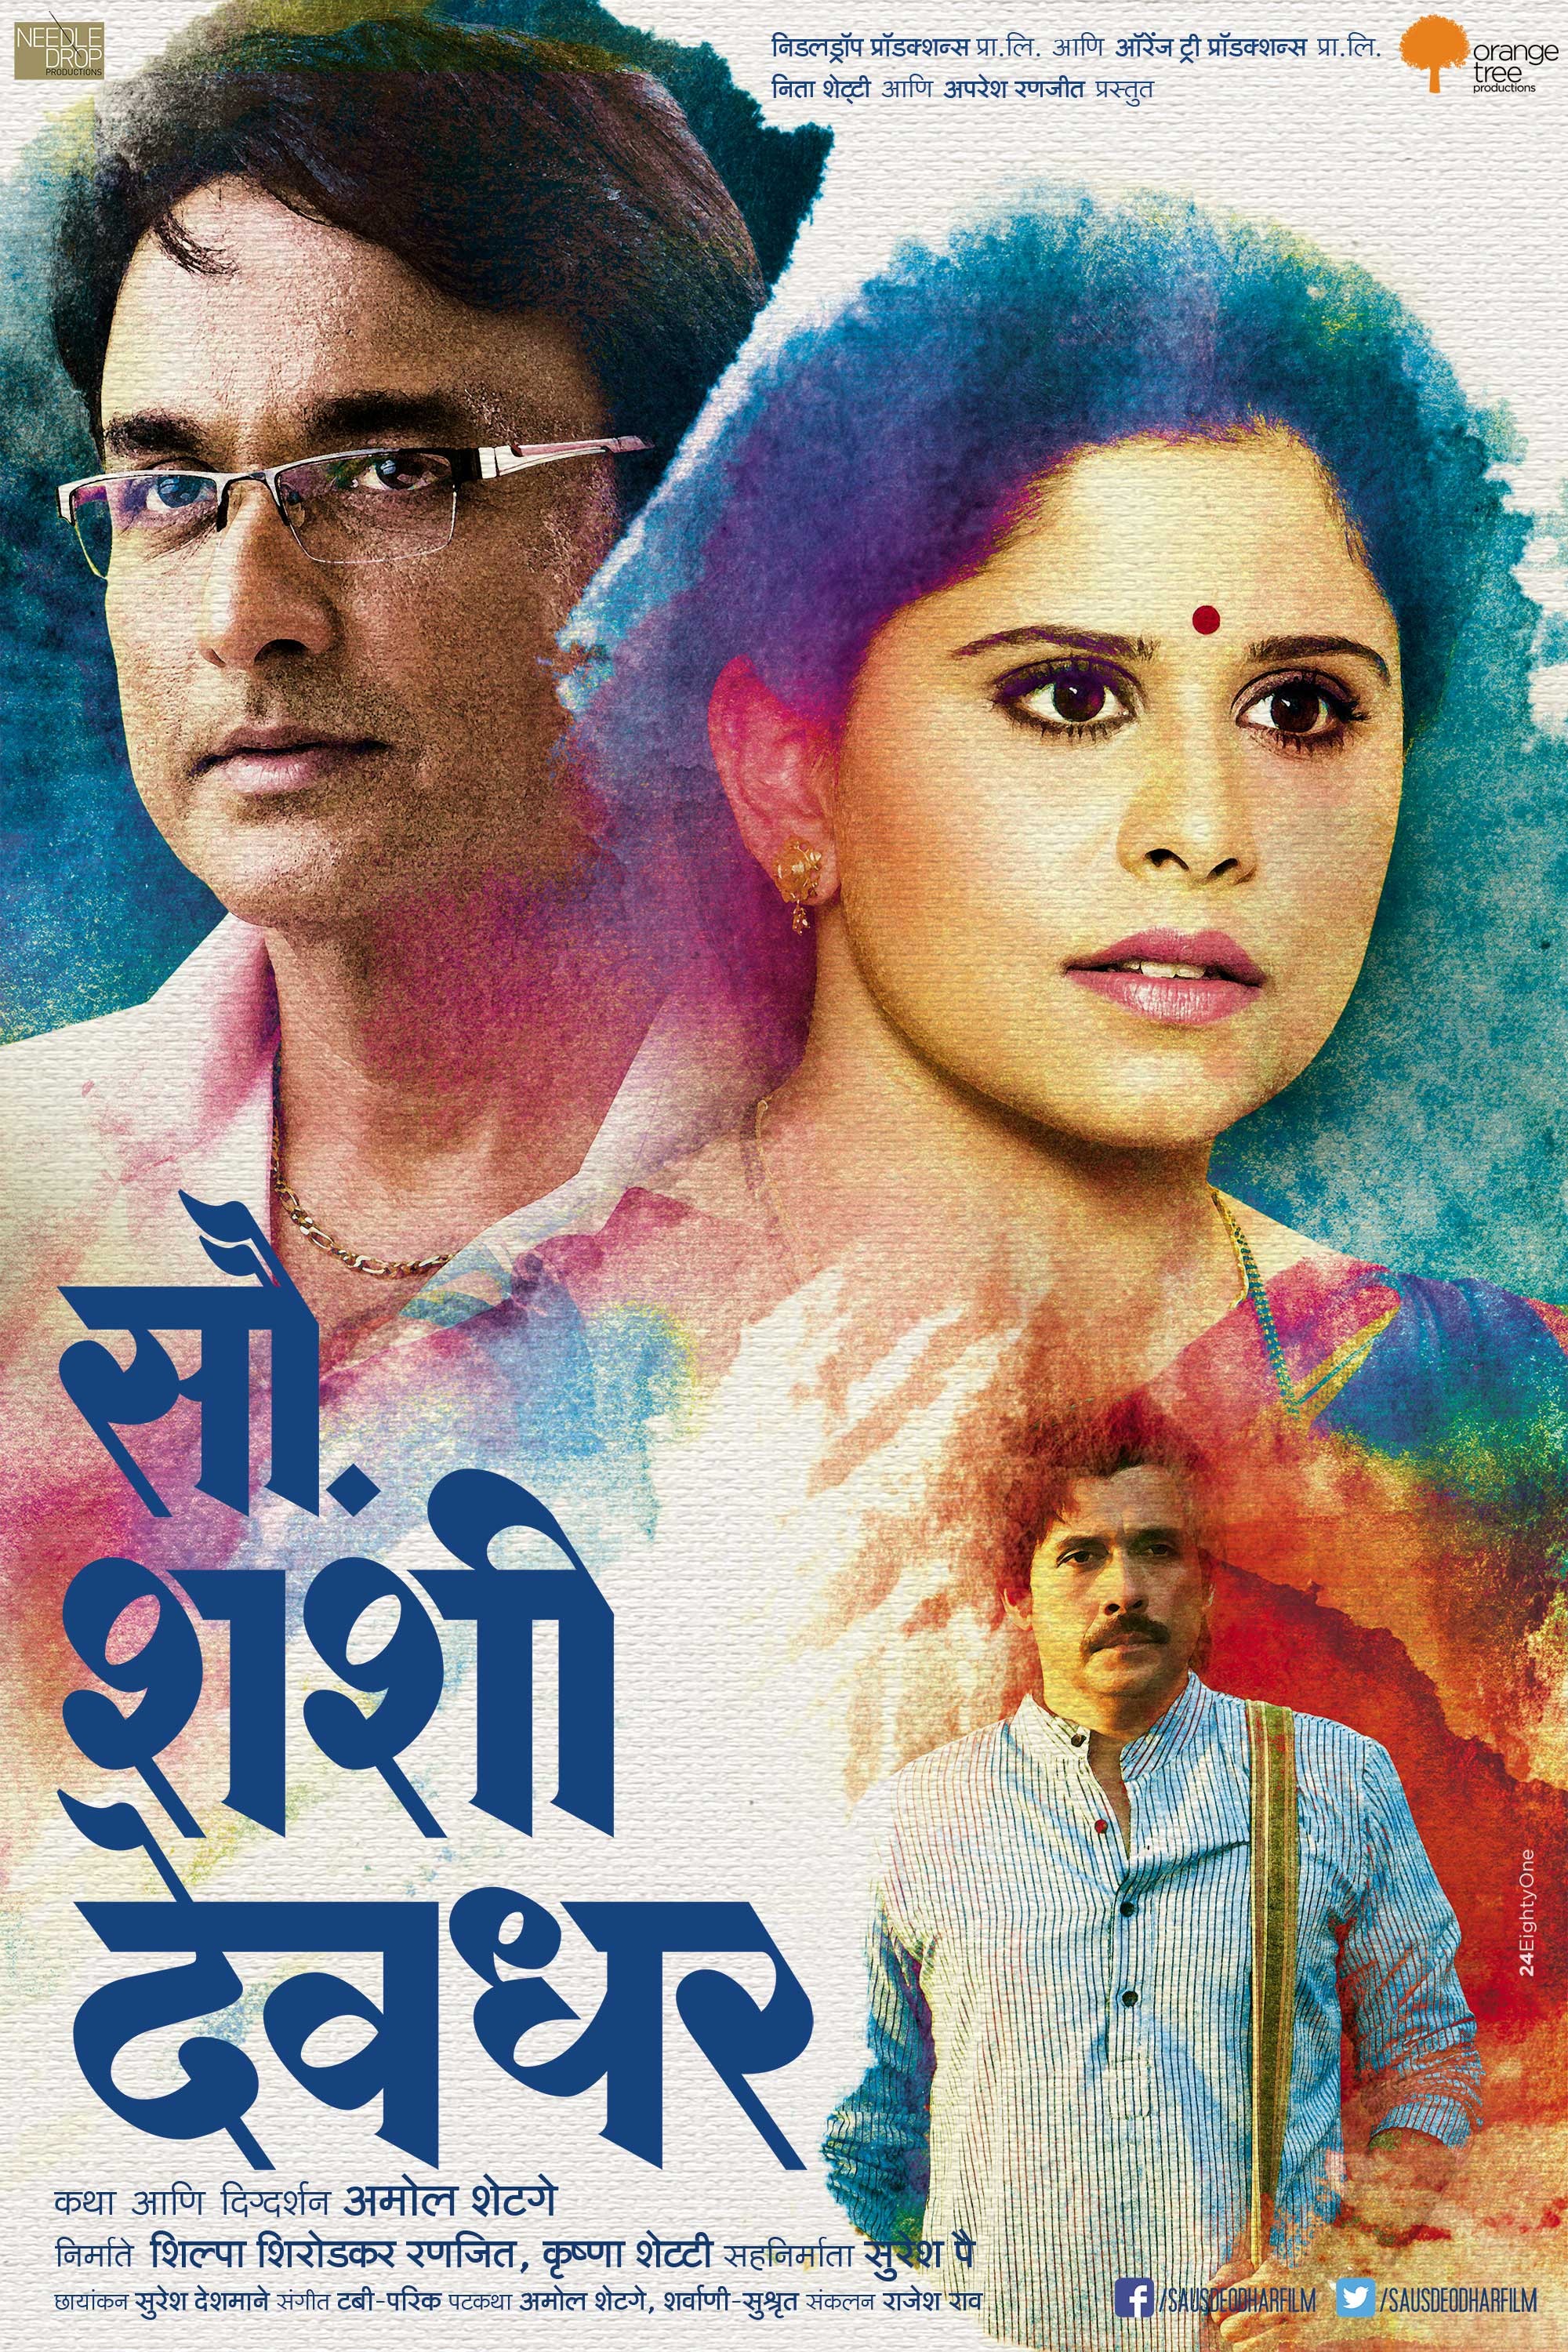 Mega Sized Movie Poster Image for Sau. Shashi Deodhar (#7 of 7)